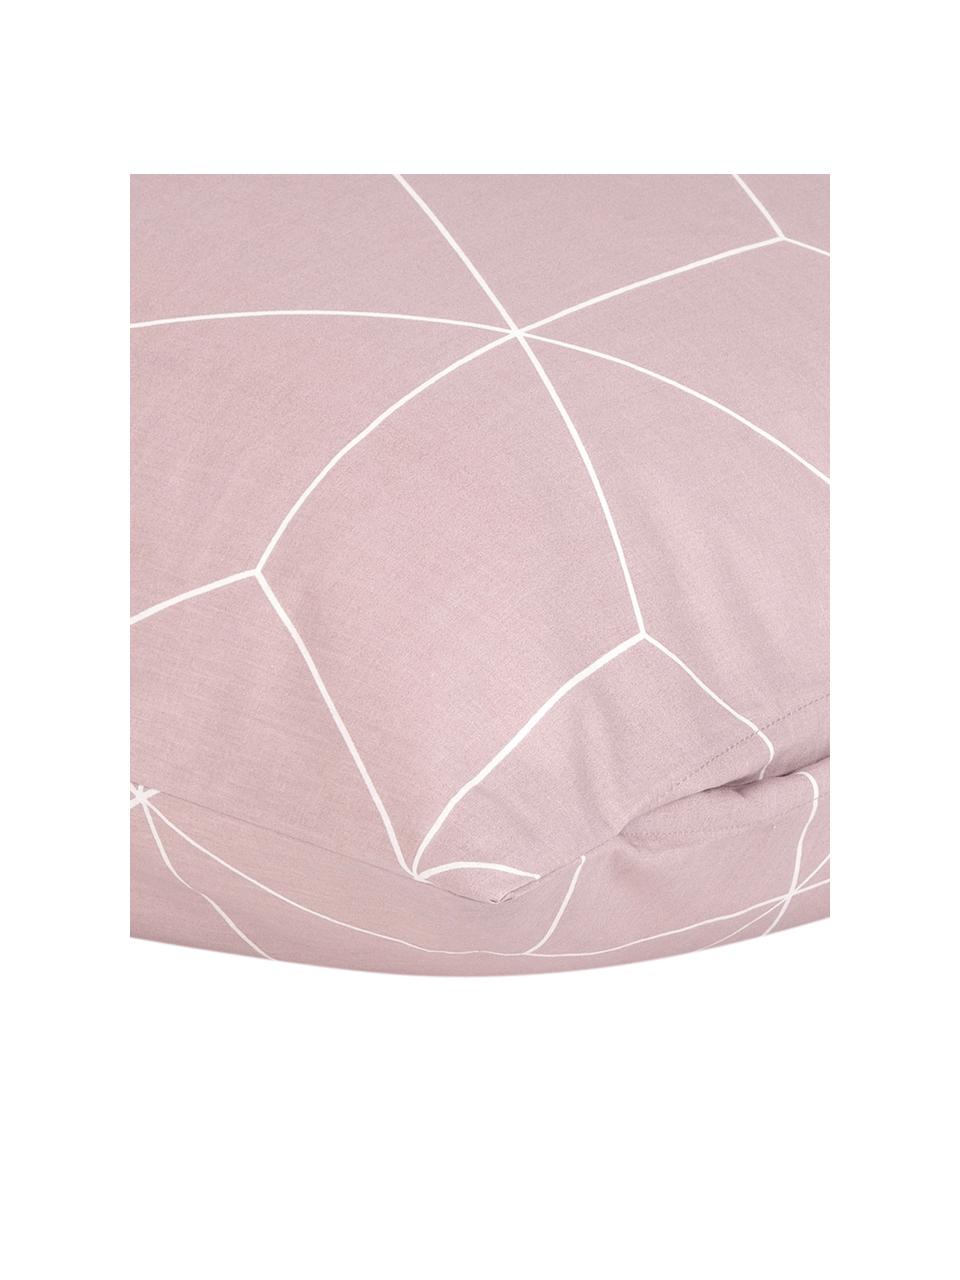 Taie d'oreiller 65x65 coton Lynn, 2 pièces, Vieux rose, blanc crème, 65 x 65 cm